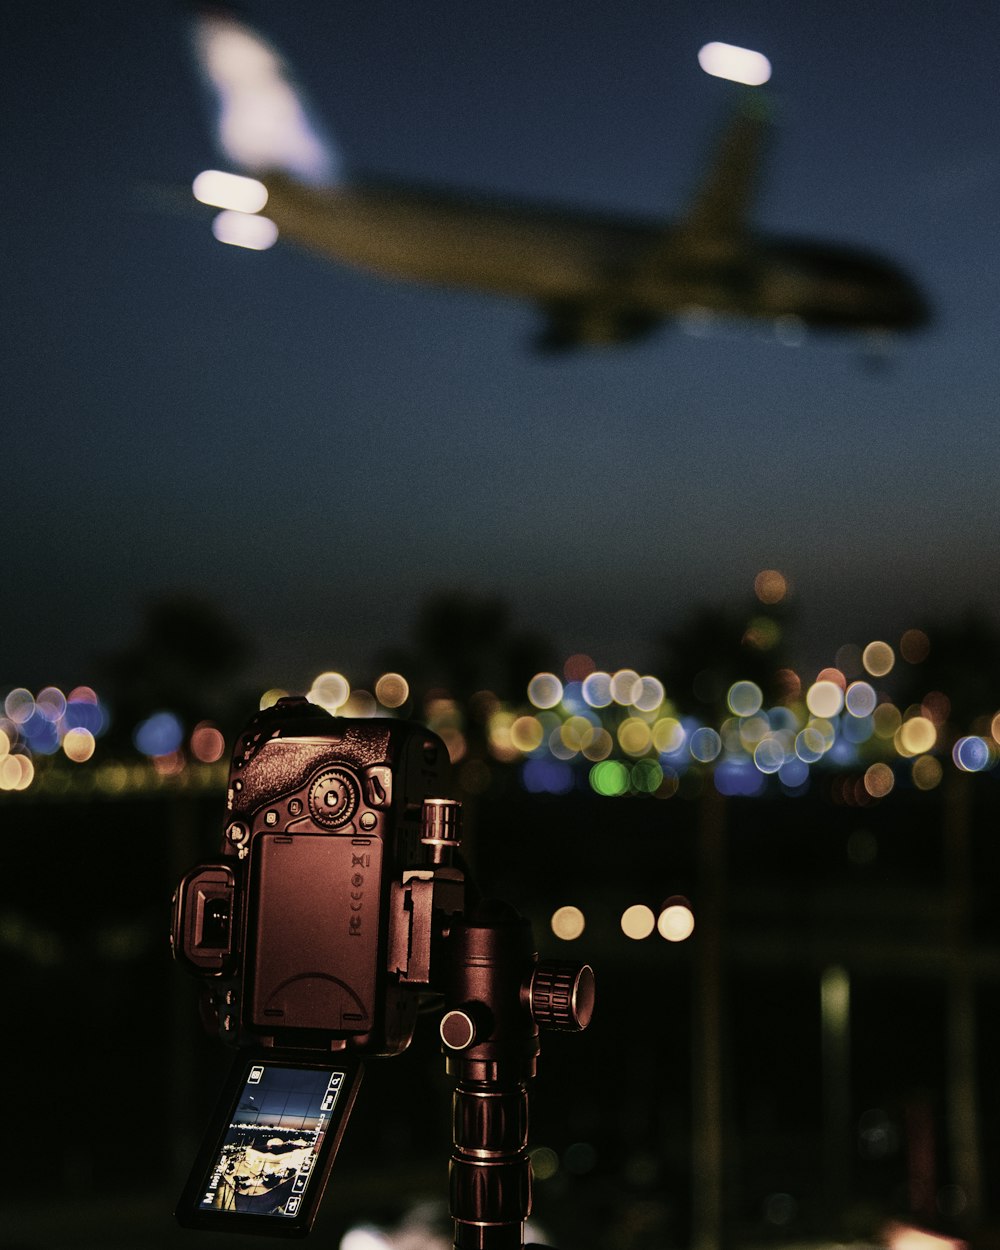 Caméra vidéo noire capturant un avion en vol